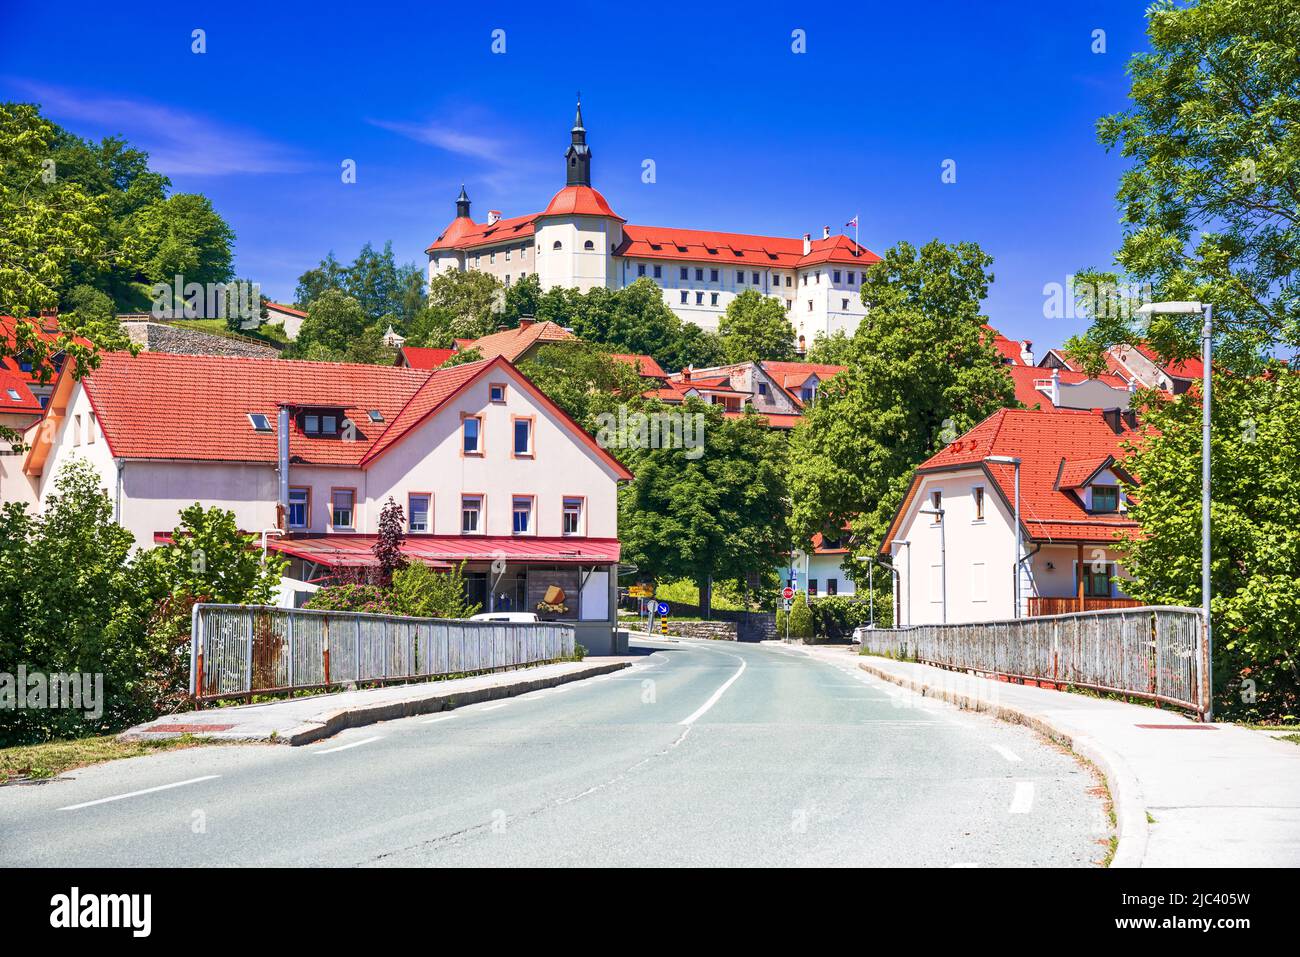 Skofja Loka, Slowenien. Historische mittelalterliche Stadt in der slowenischen Region Krain. Stockfoto